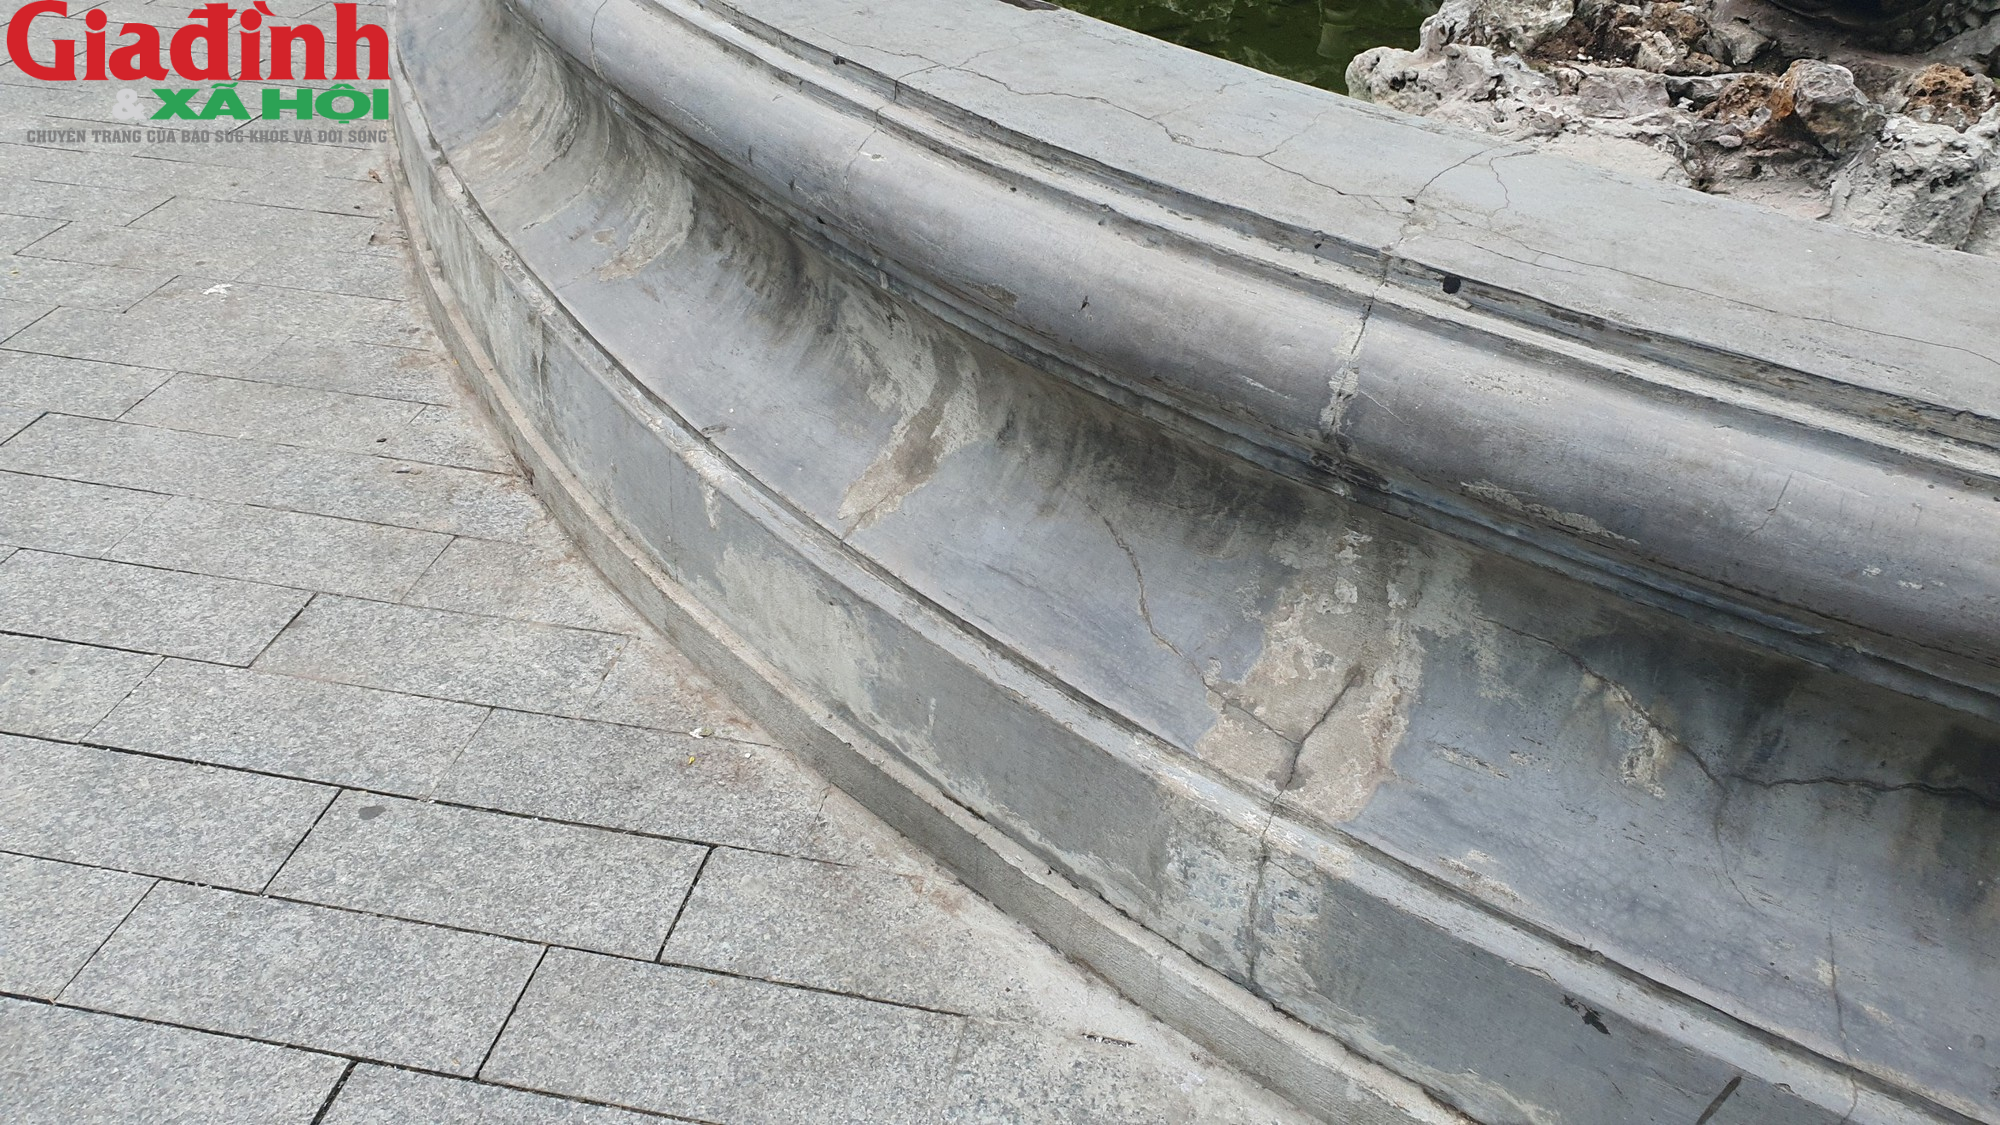 Cận cảnh đài phun nước hơn 120 năm tuổi ở Hoàn Kiếm - Ảnh 6.